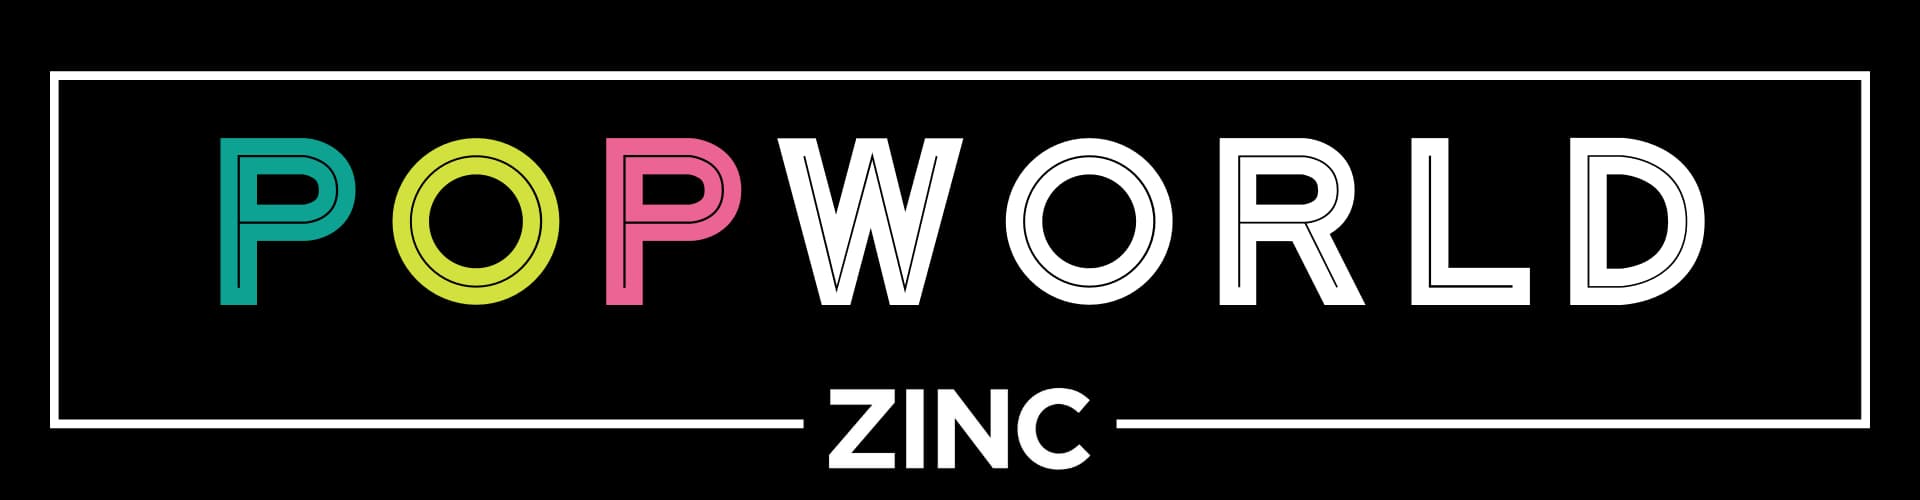 Popworld at Zinc Macclesfield